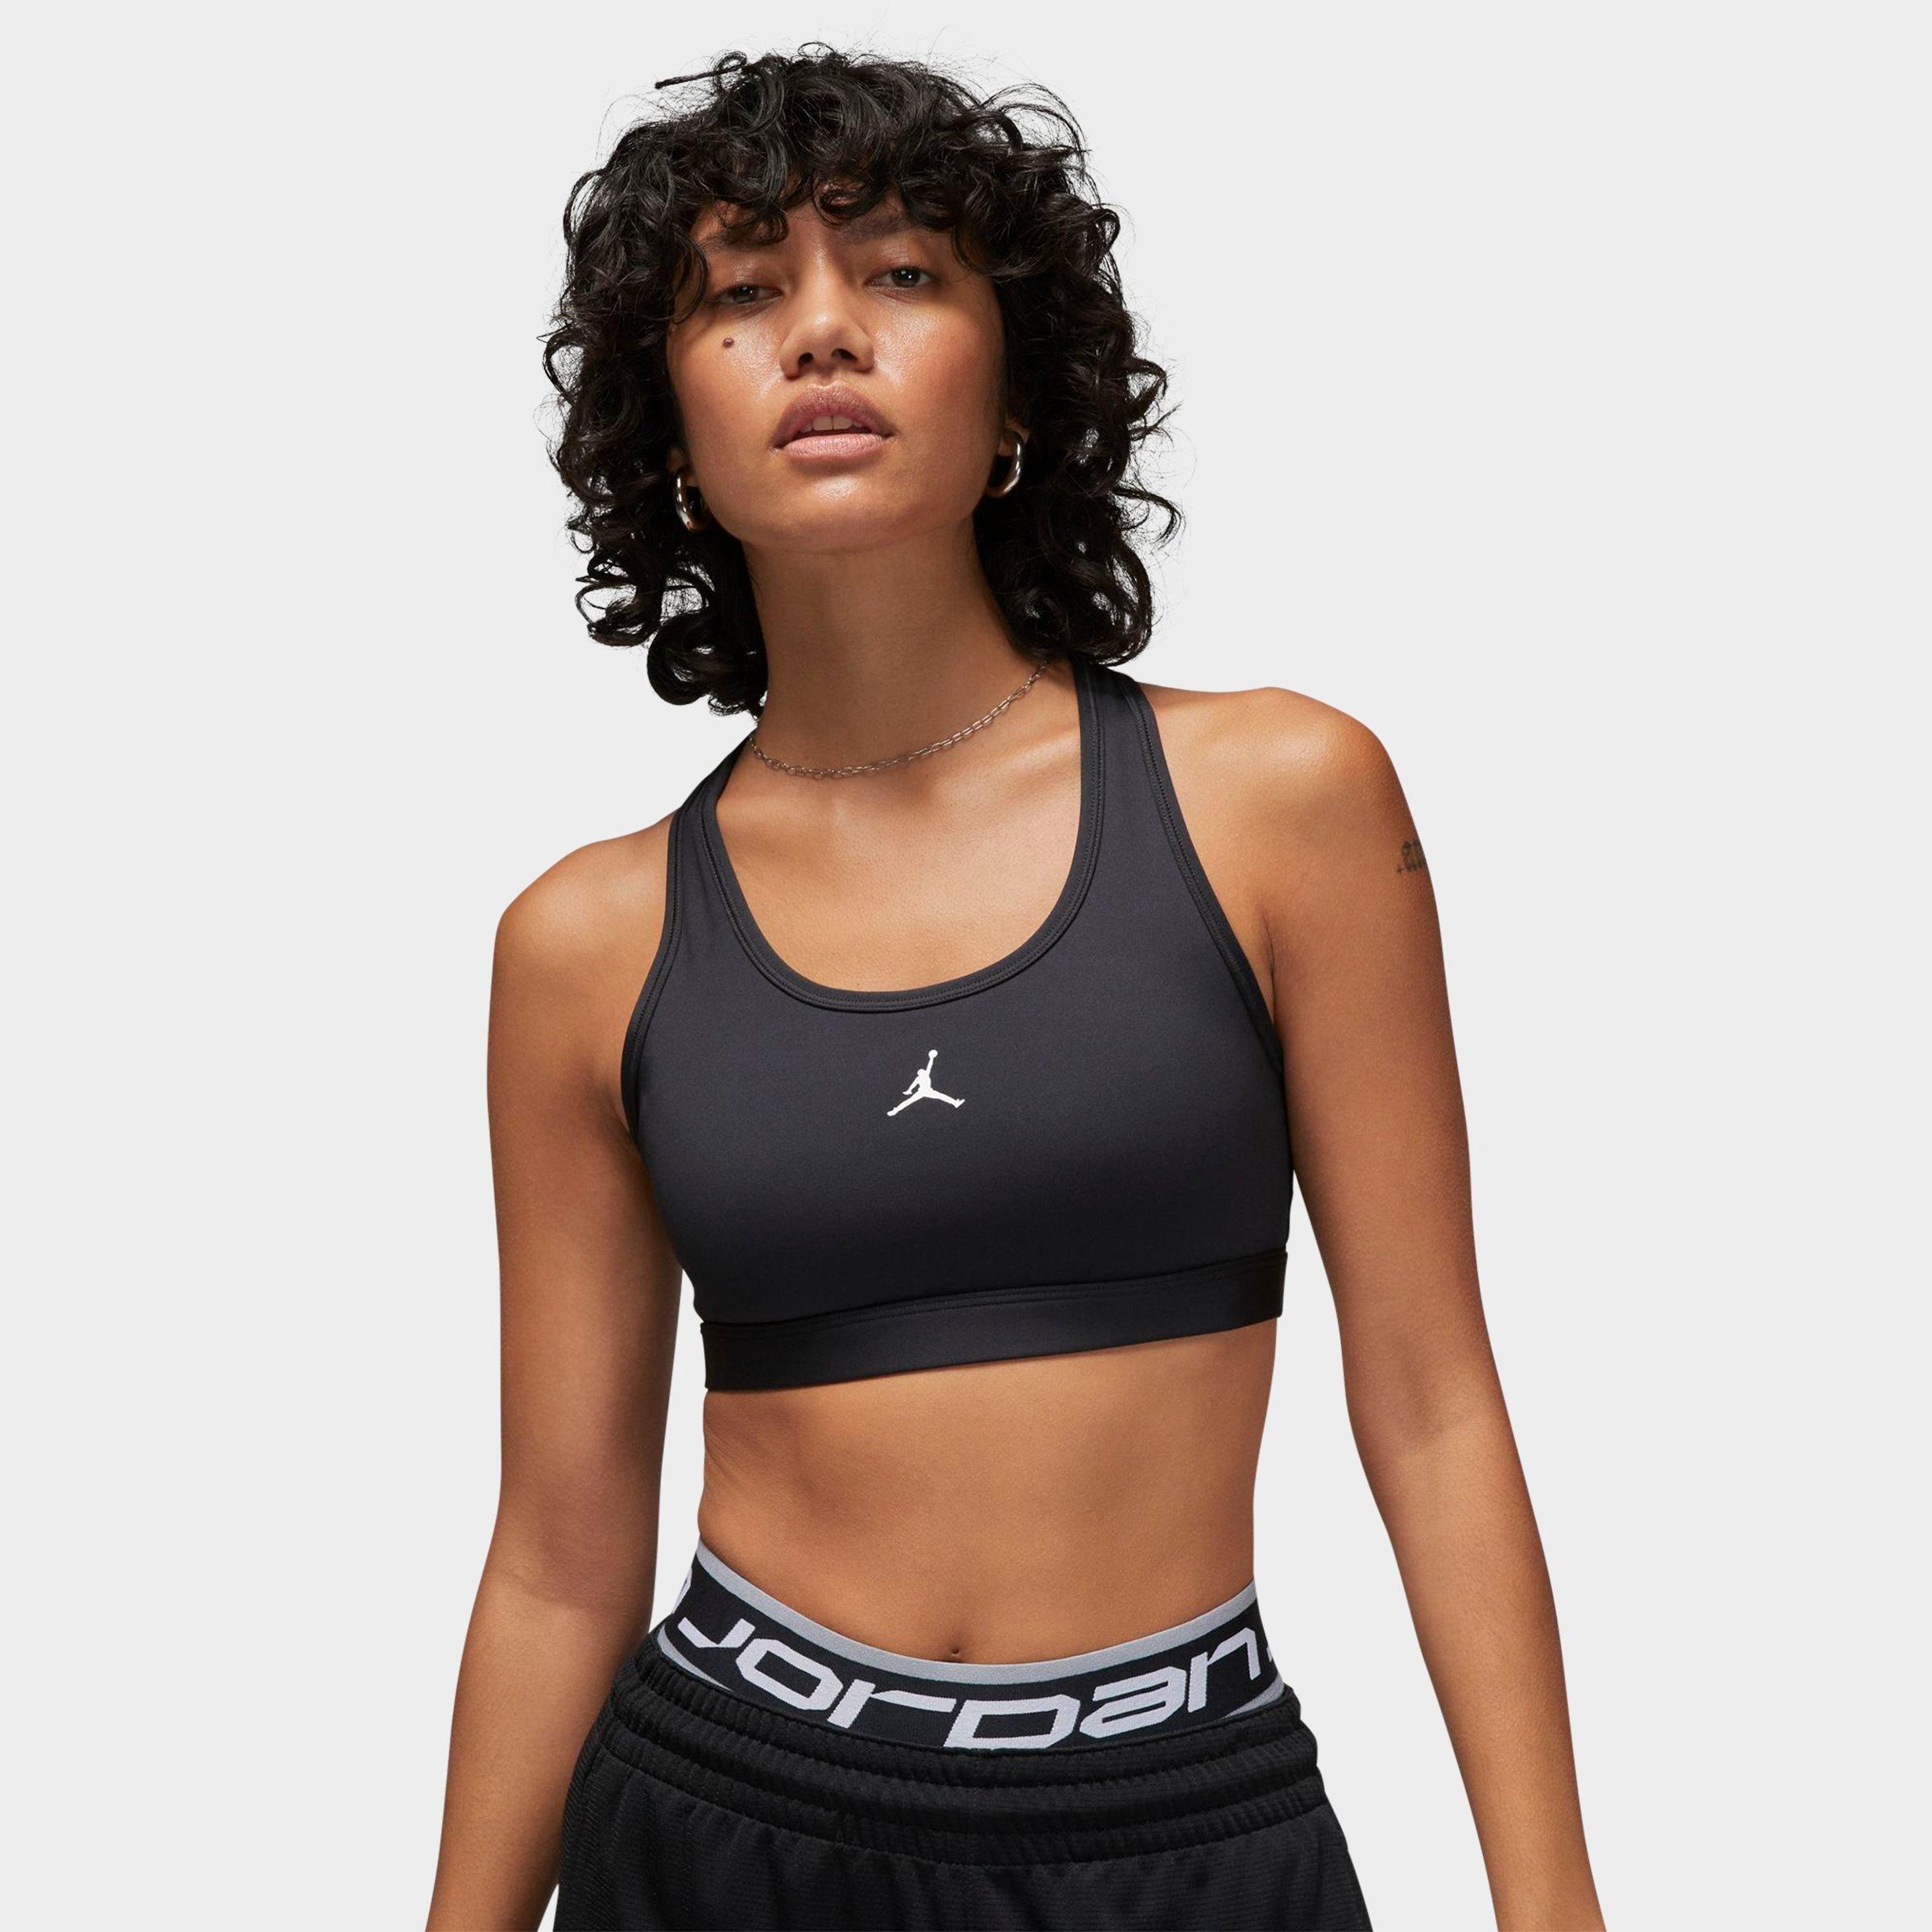 Nike Womens Swoosh 1-Piece Padded Longline Sports Bra Black XXL